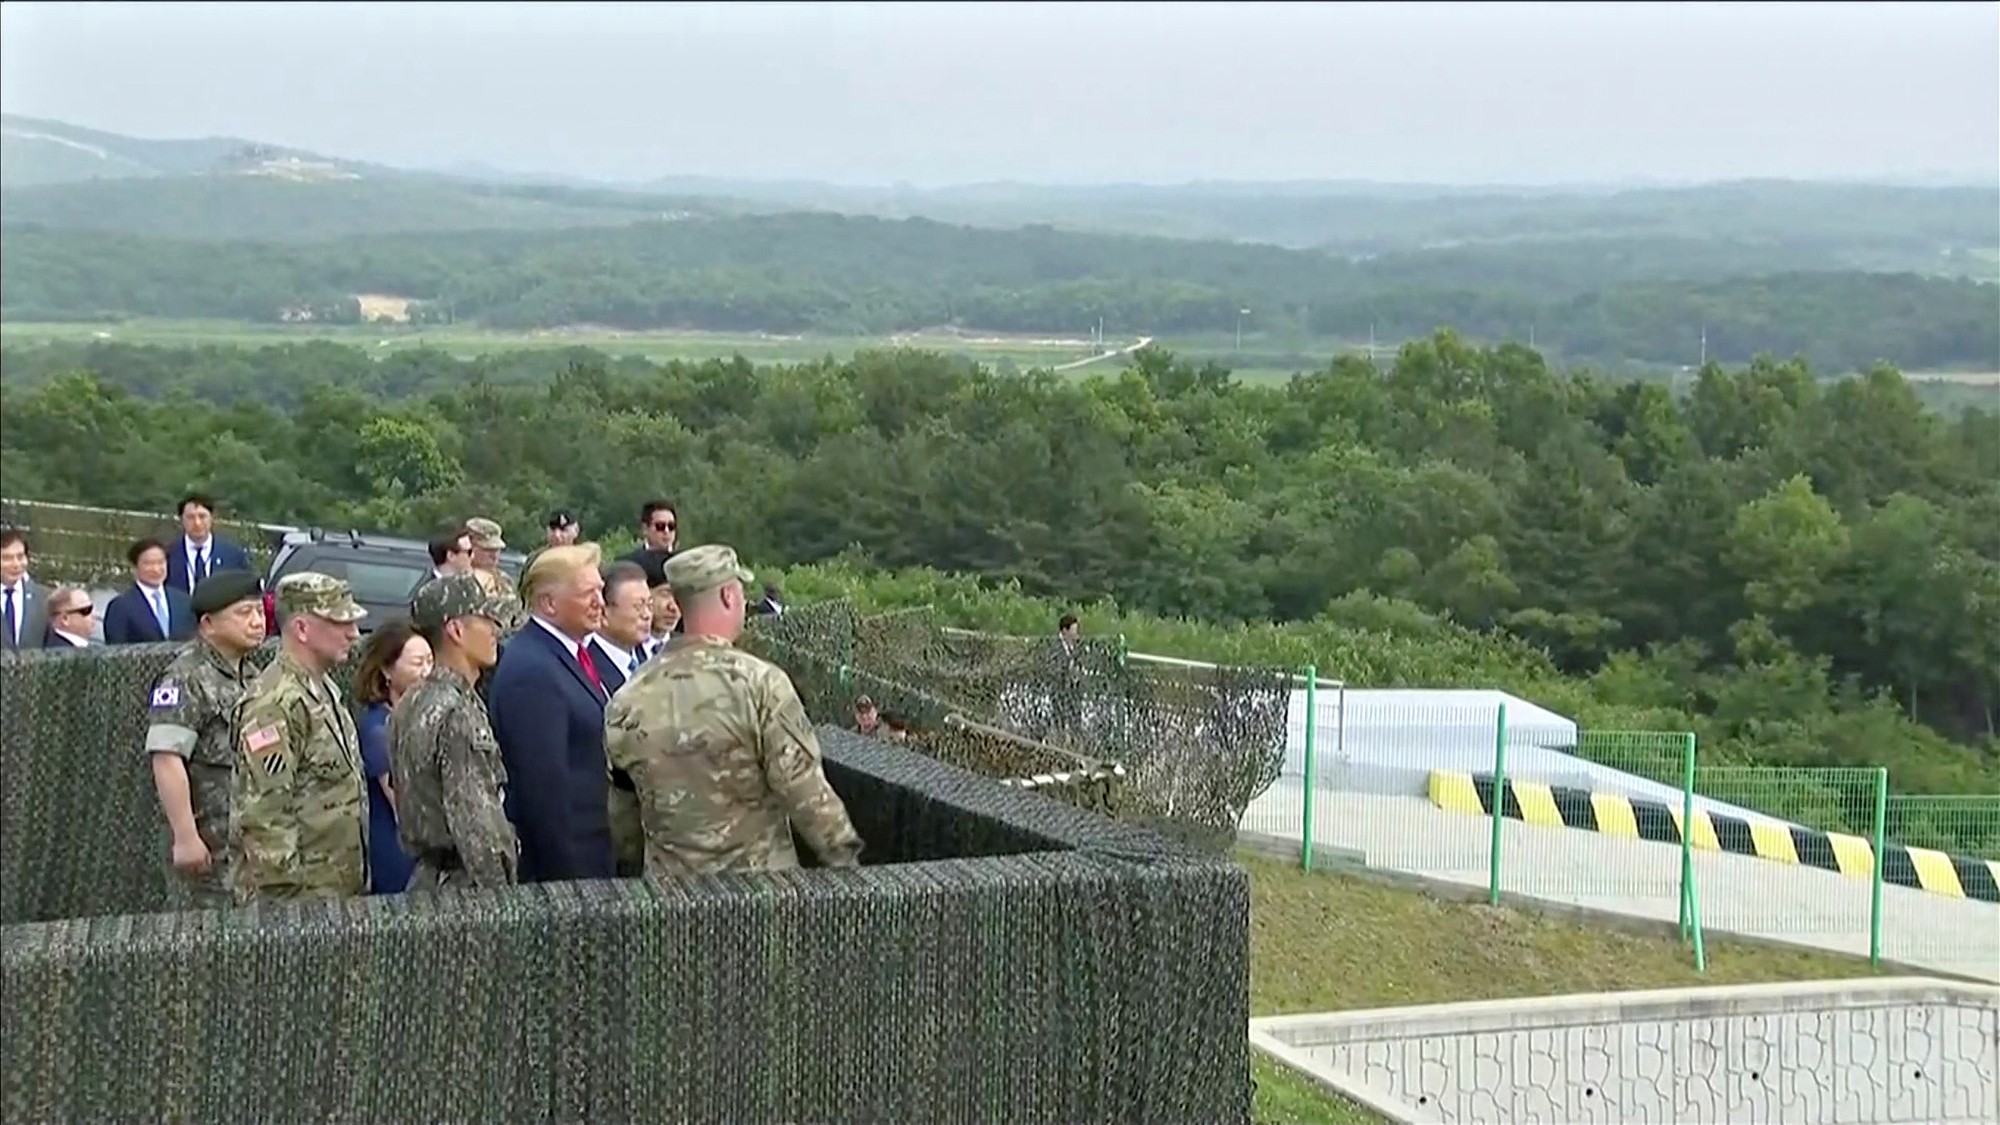   Tổng thống Mỹ Donald Trump cùng Tổng thống Hàn Quốc Moon Jae In thăm chốt biên phòng nhìn về phía Triều Tiên ngày 30.6 - Ảnh: Reuters.  